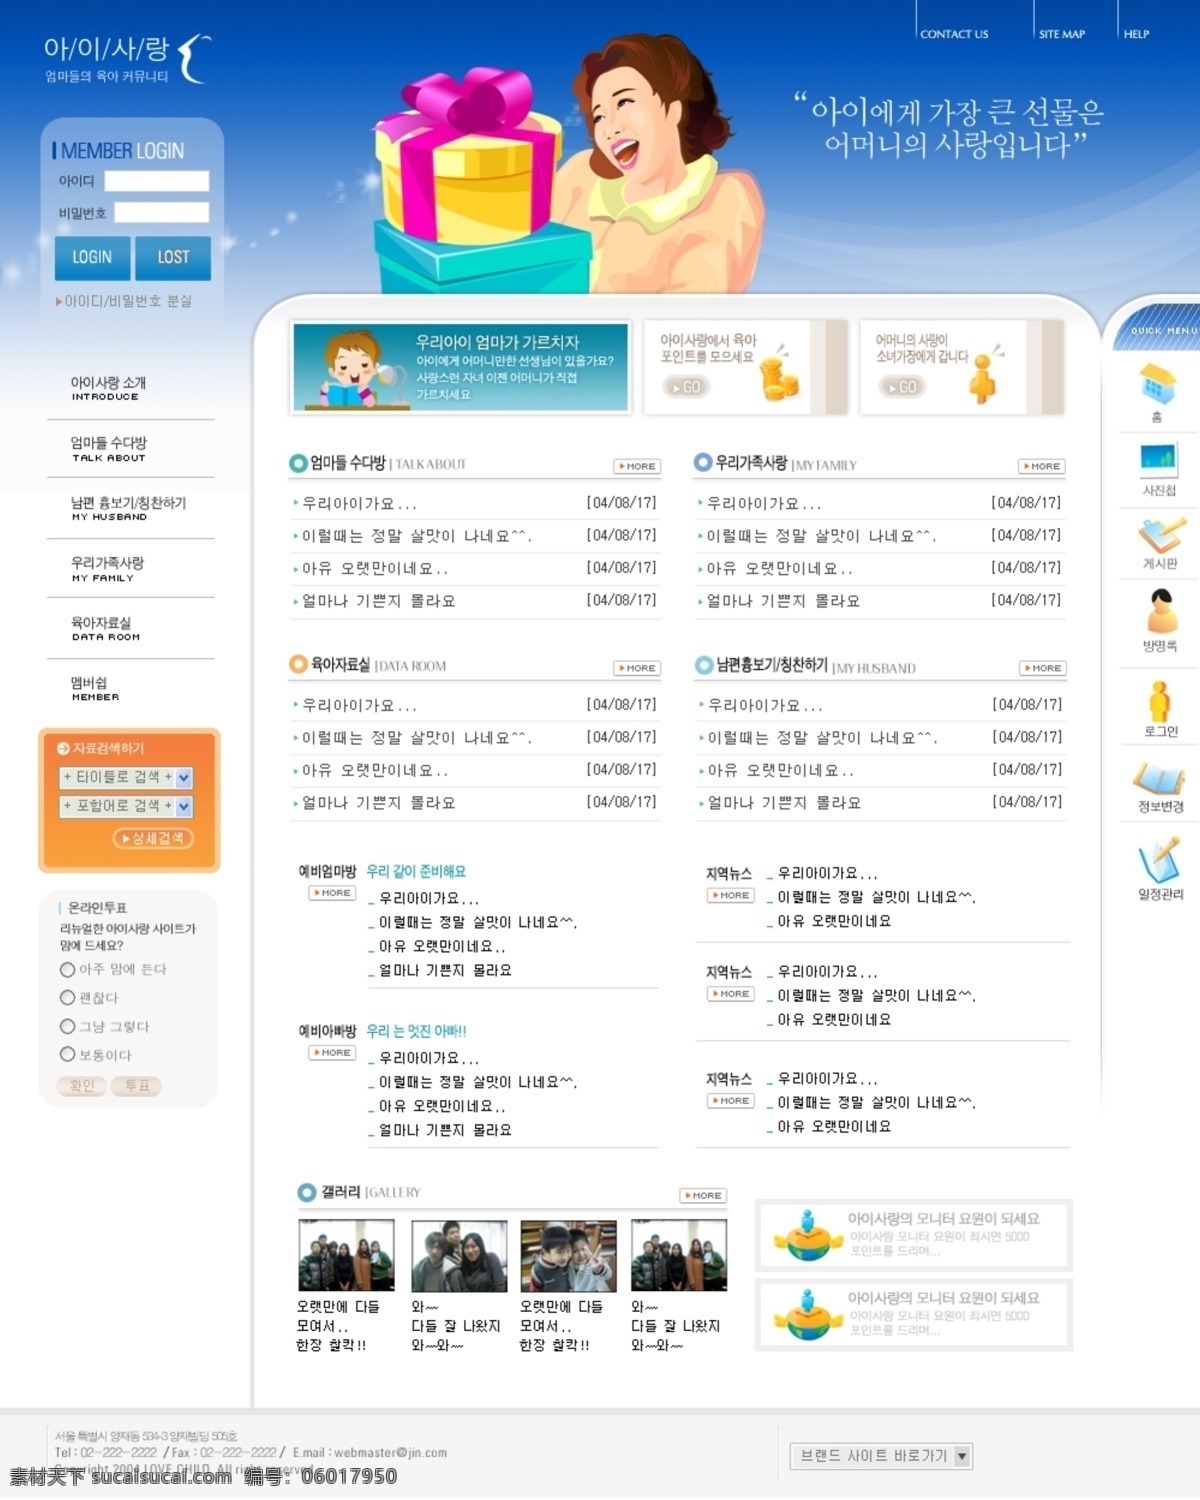 韩国模板 韩国模版 韩国网页模版 教育 教育网页 蓝色模版 网页模板 网页模版 精美 韩国 类 网页 模版 源文件库 网页素材